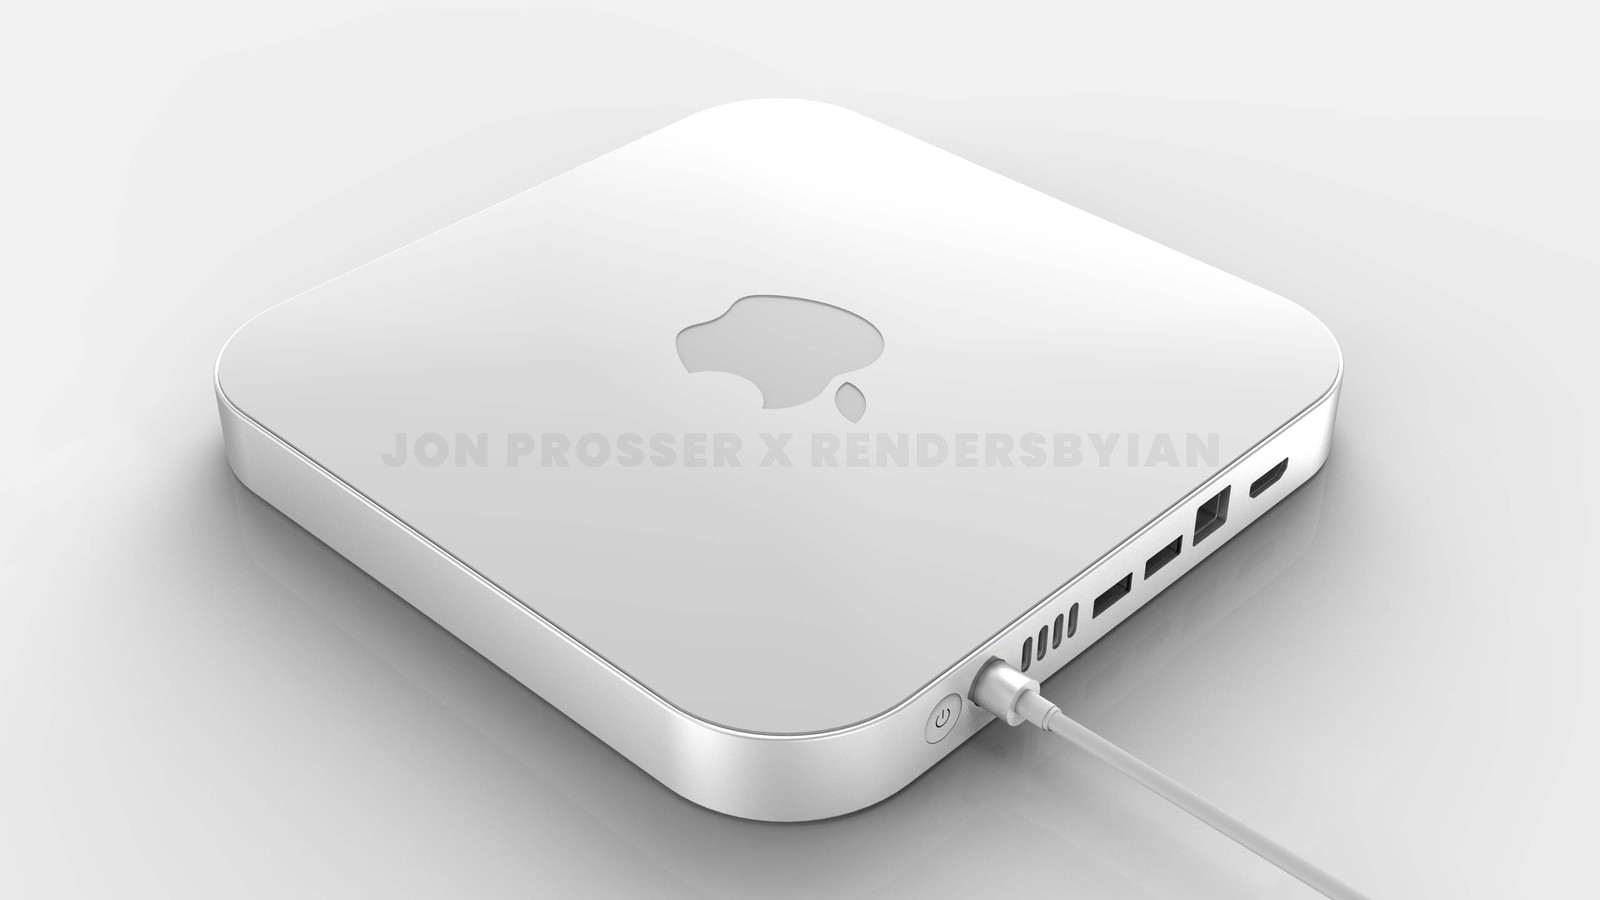 Mac Mini Render by Jon Prosser and RendersbyIan